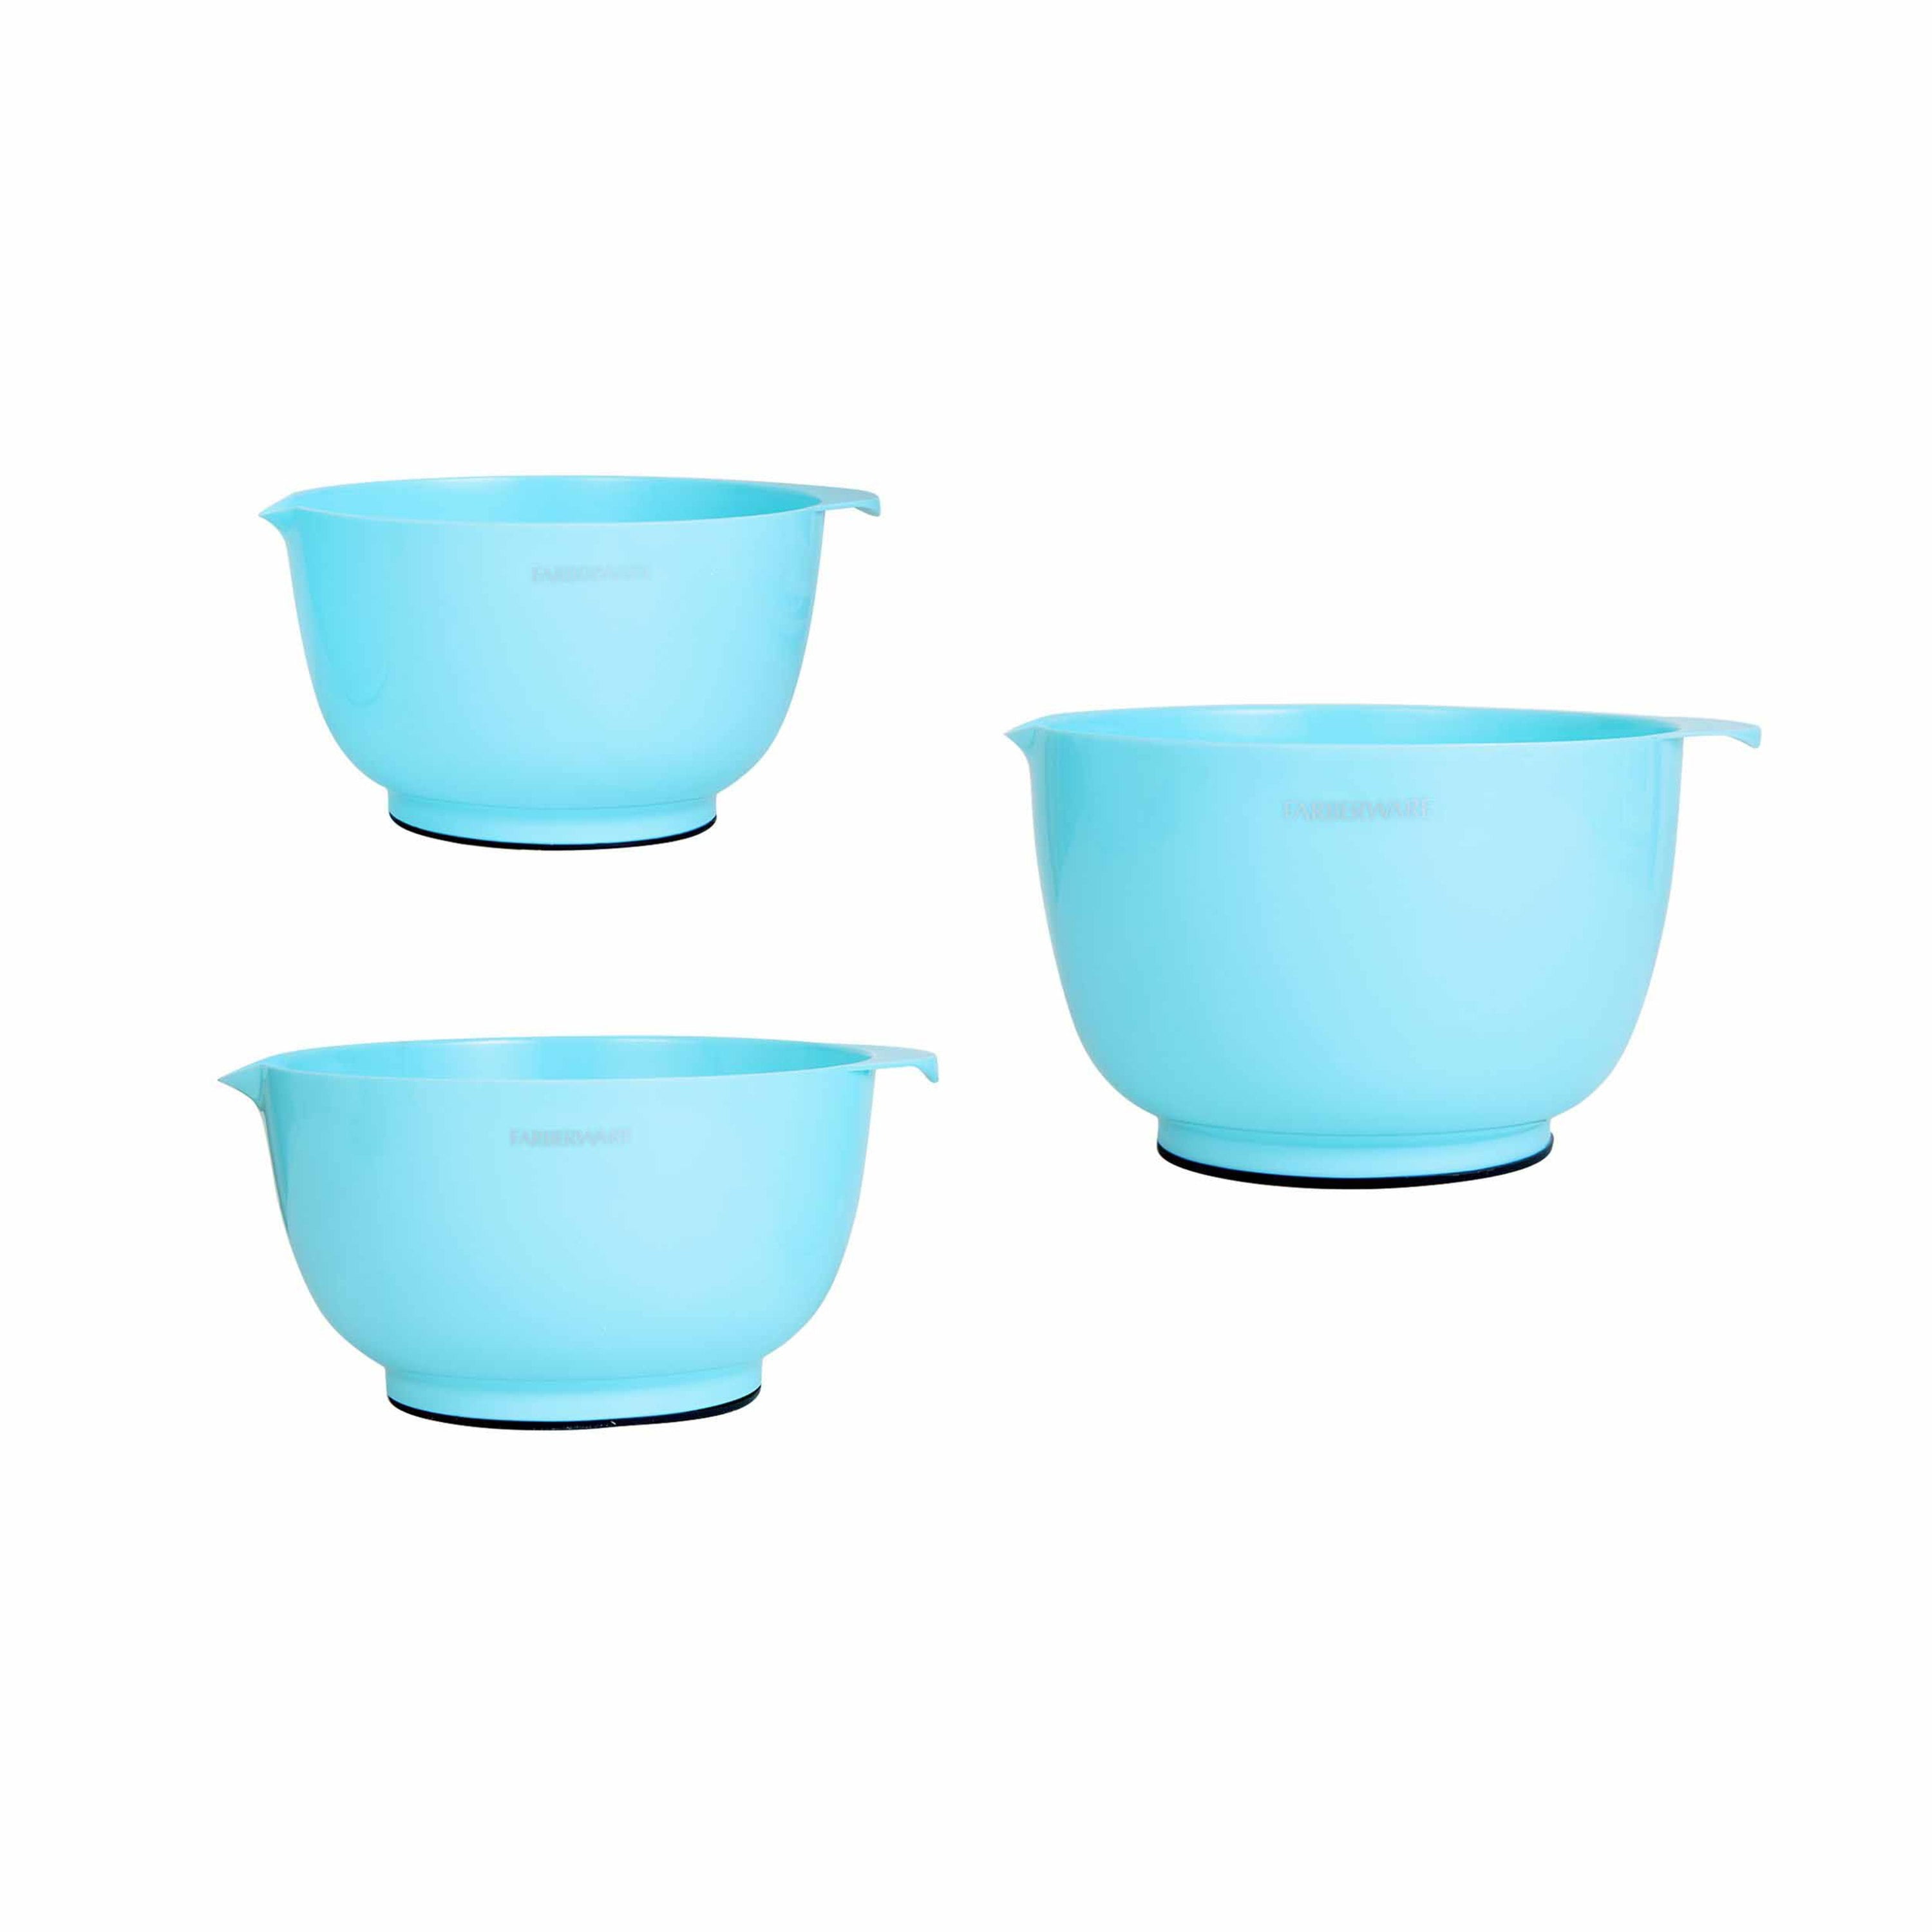 Farberware Professional 20-piece Plastic Mixing Bowl and Prep Set in Aqua -  Walmart.com